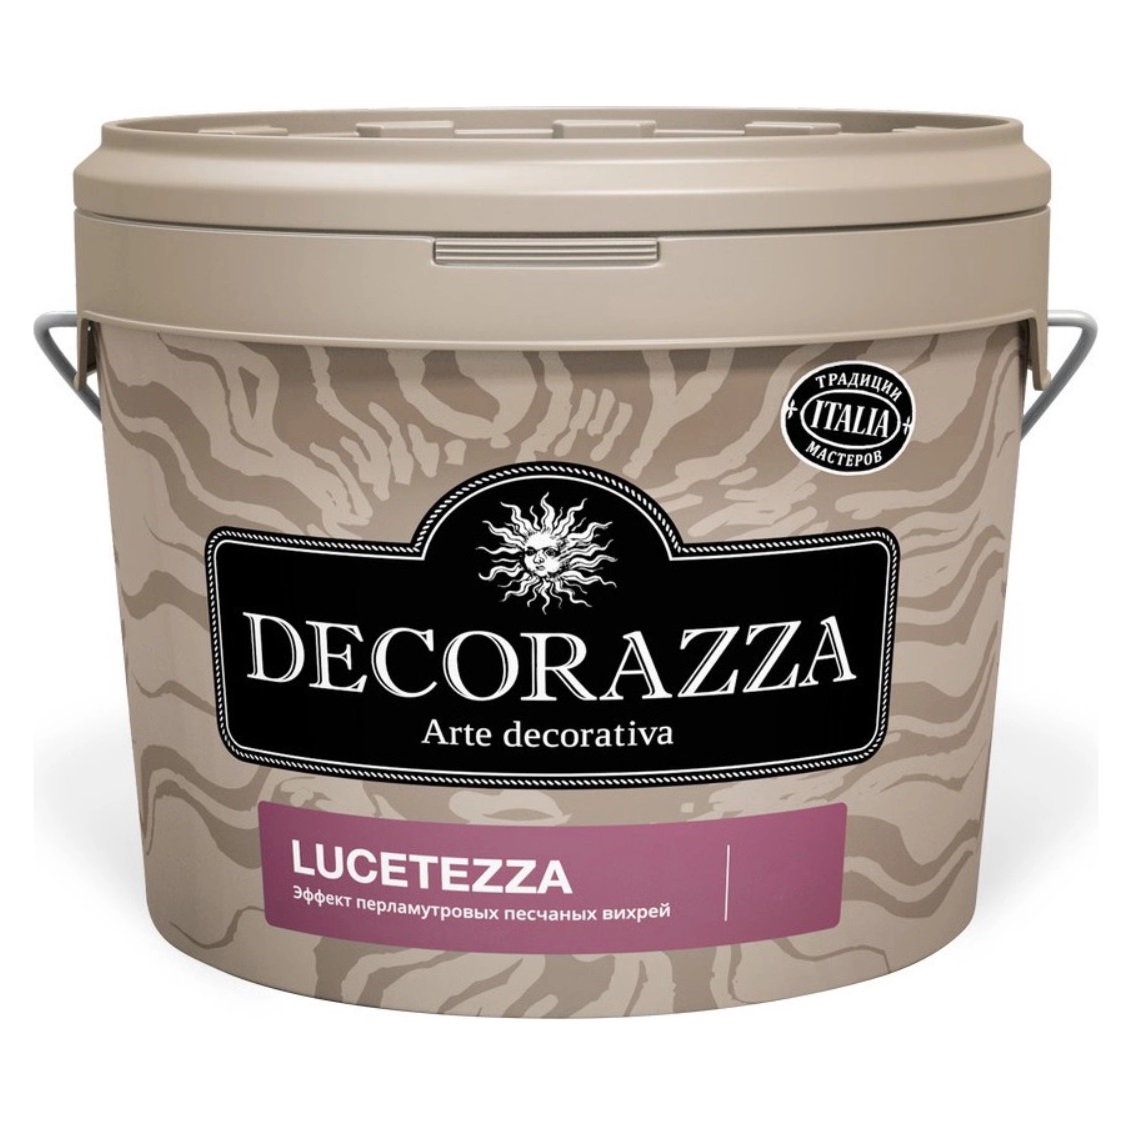 Декоративная краска Decorazza lucetezza база oro 5.0кг декоративная краска decorazza seta oro 1 0кг